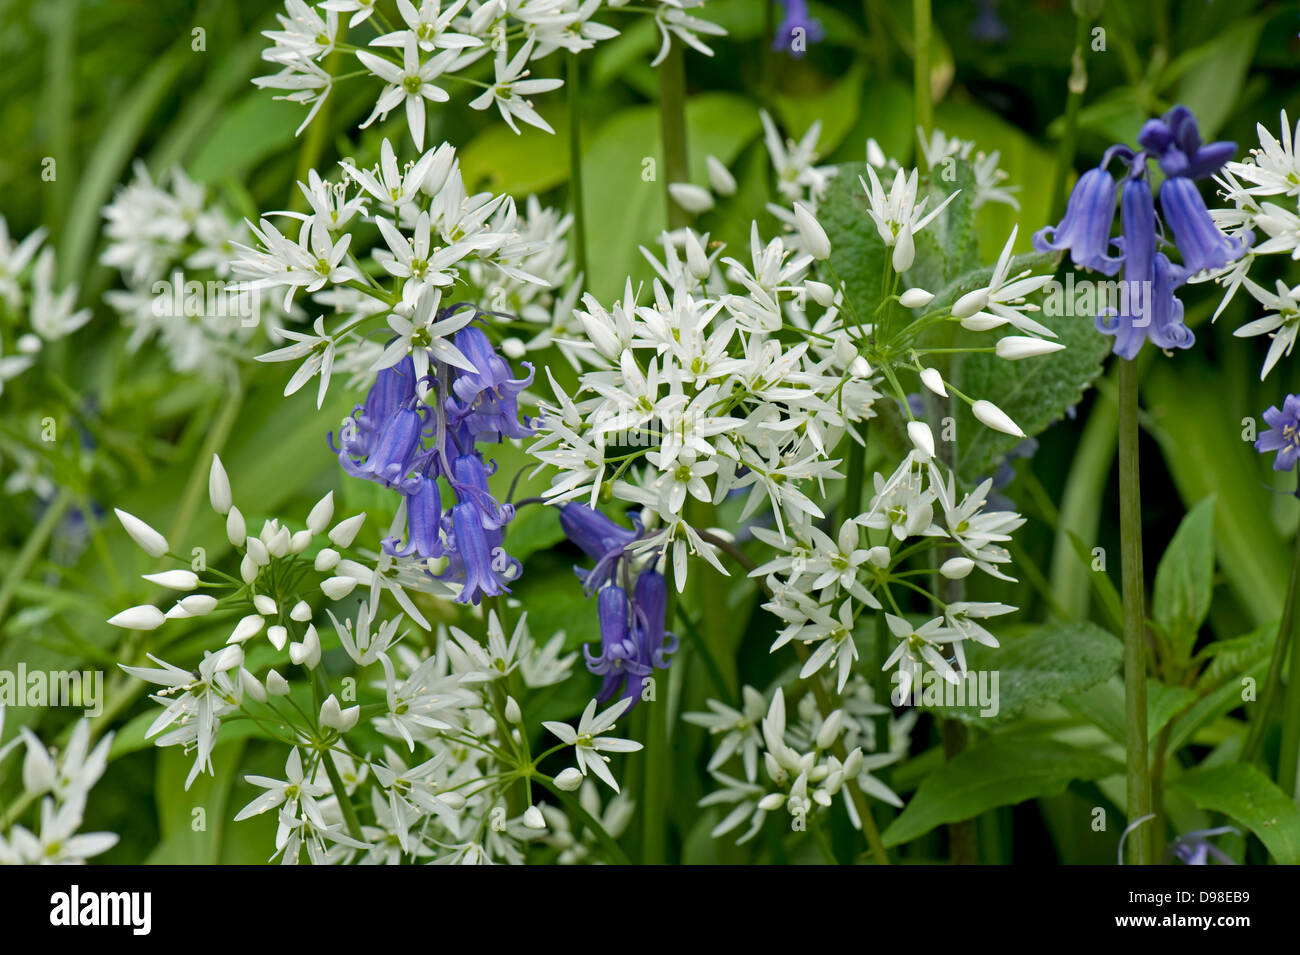 L'ail des ours, Allium ursinum, fleurs blanches bluebells, Hyacinthoides sp., au printemps Banque D'Images